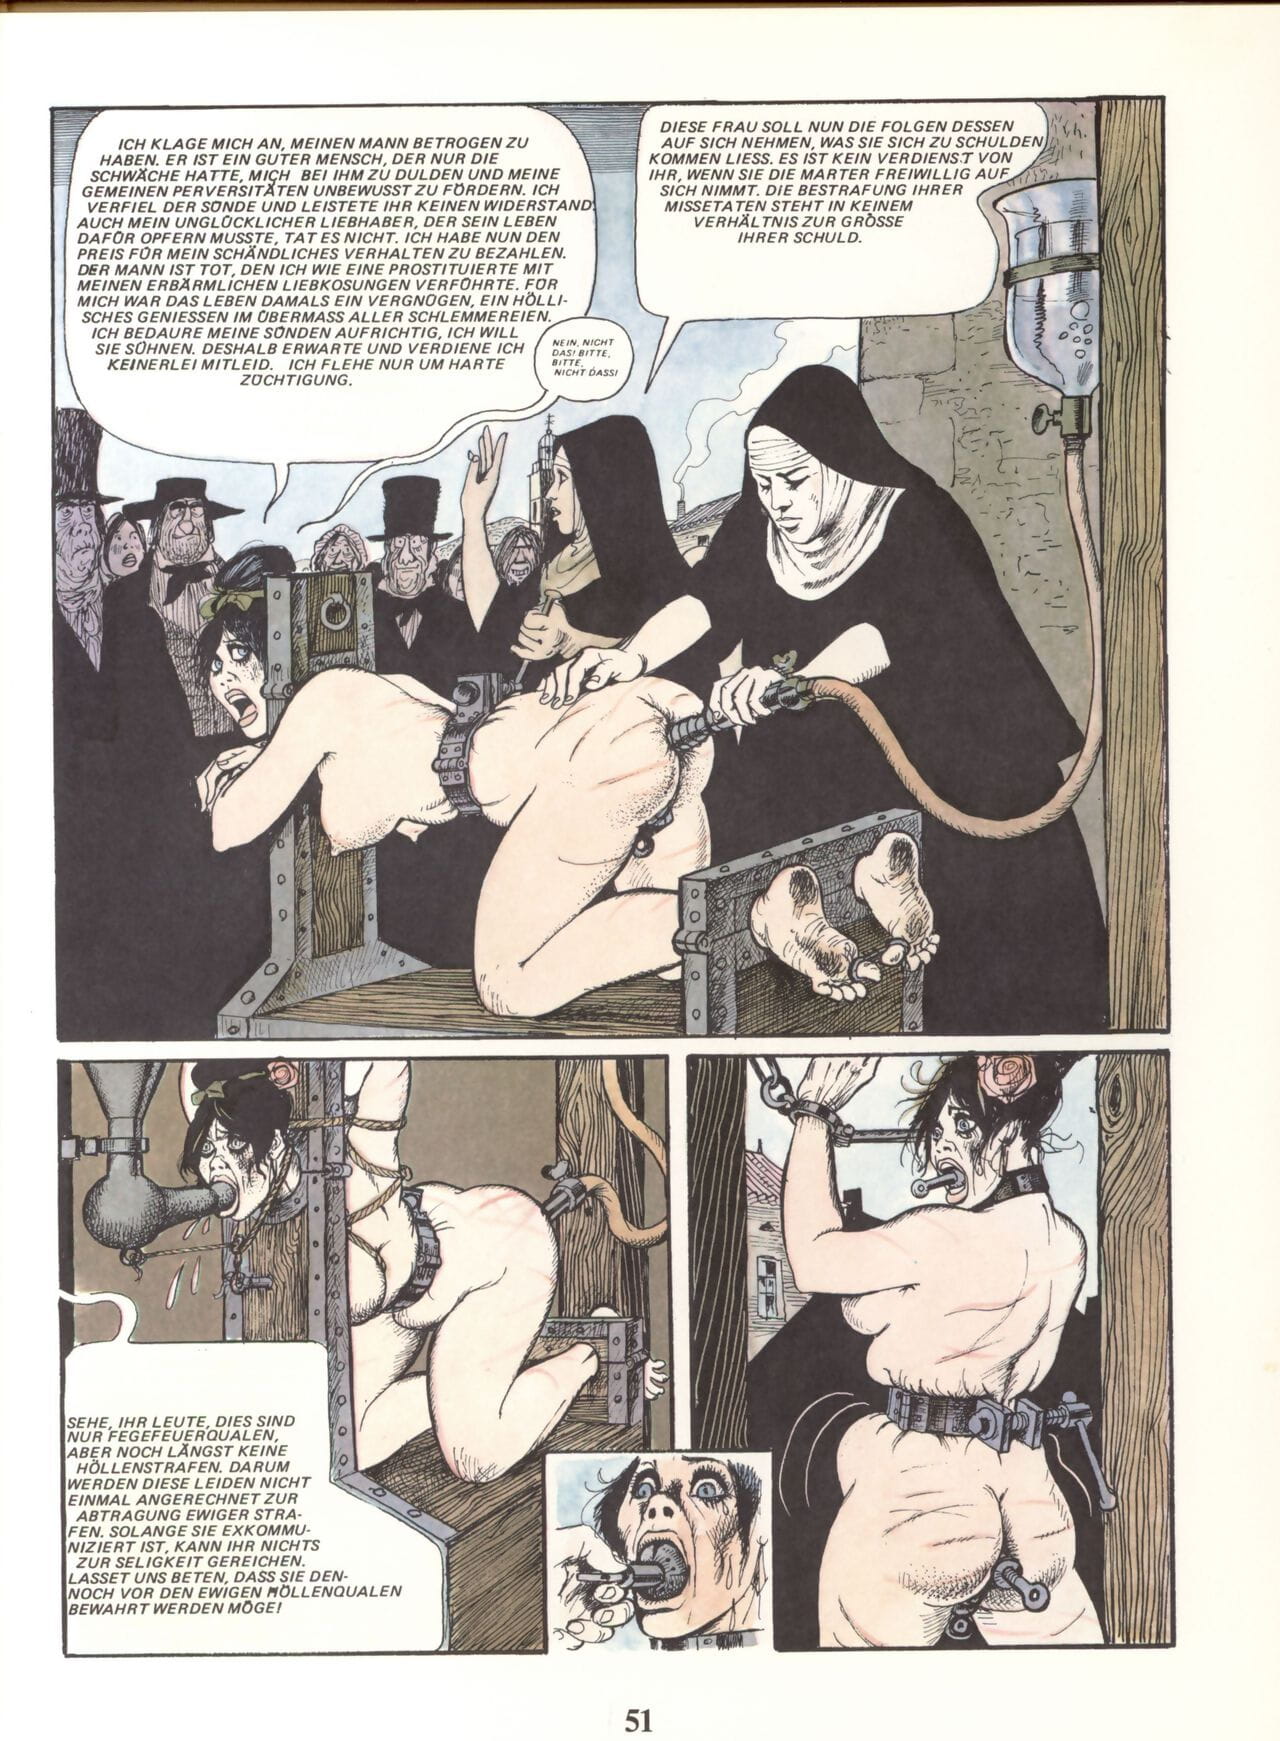 Marie Gabrielle De Saint eutrope #02 PARTIE 5 page 1